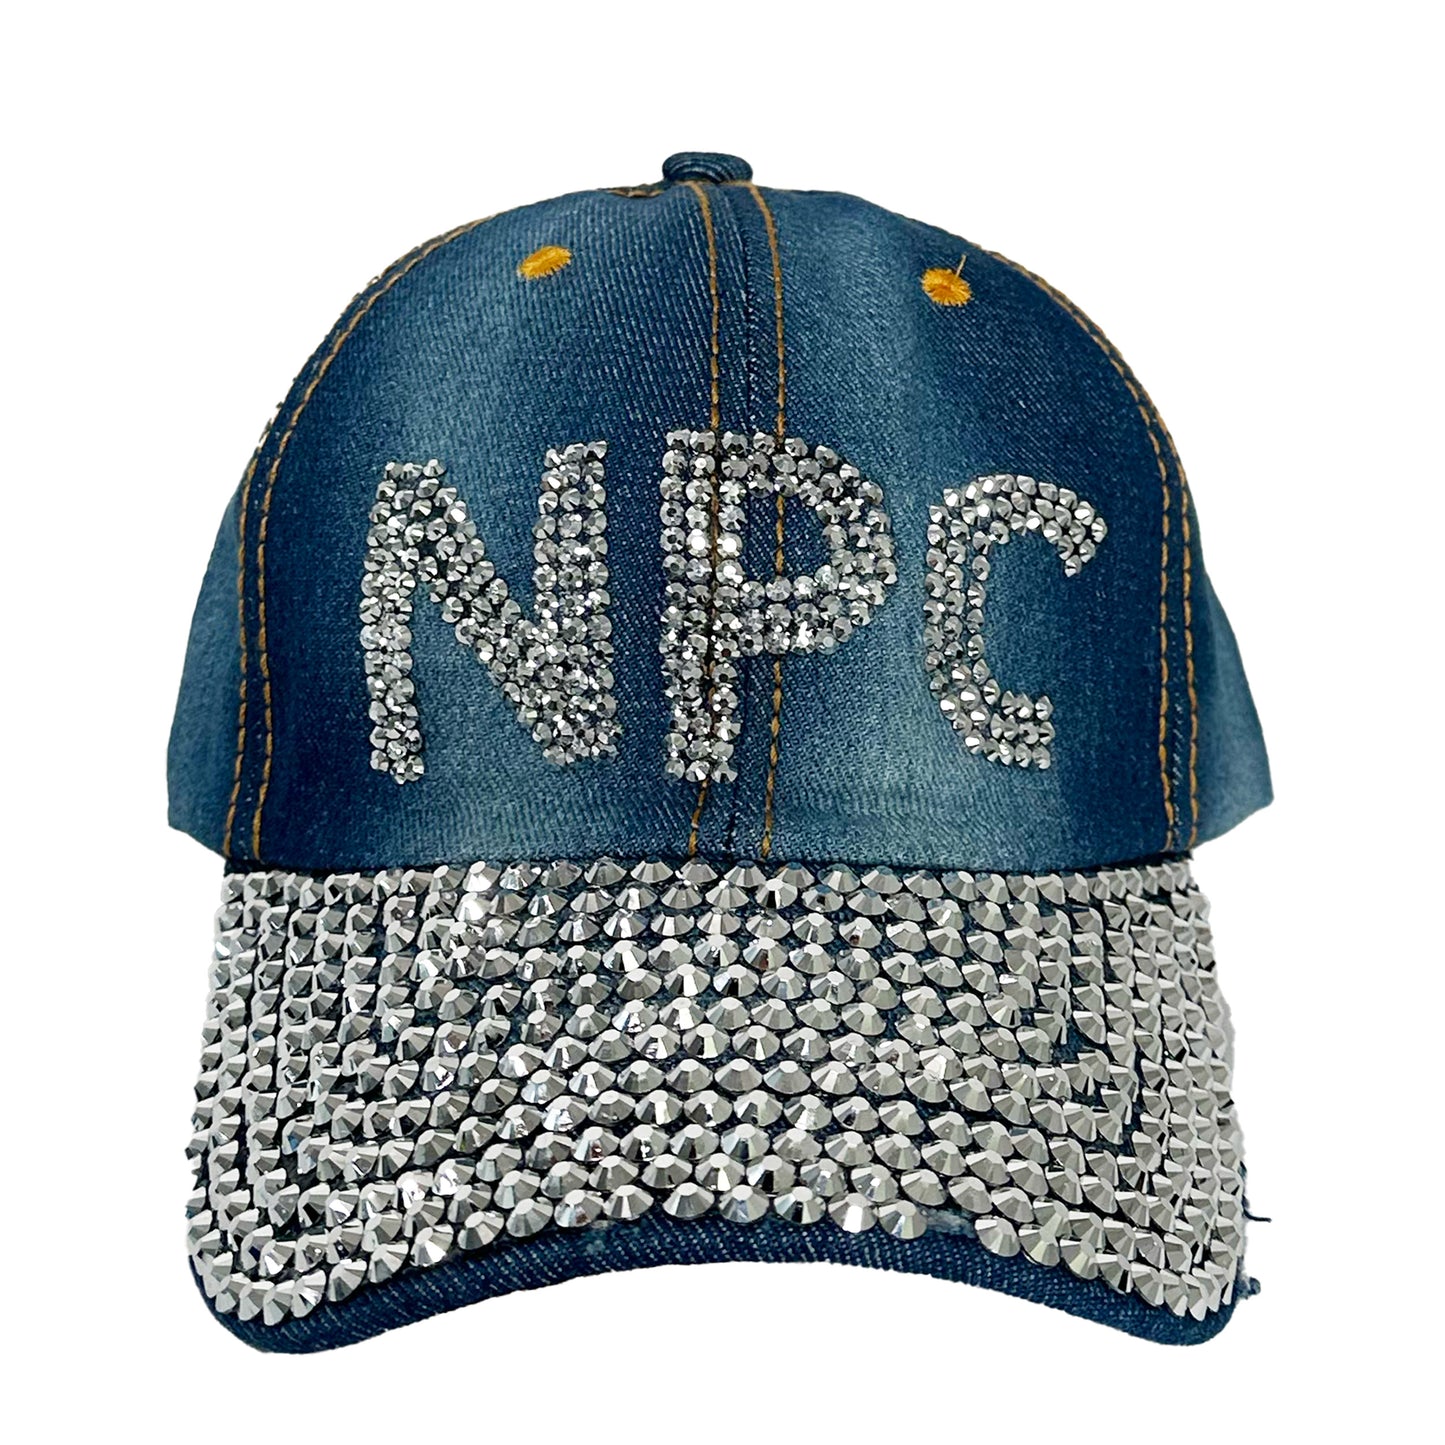 Rhinestone NPC Hat.